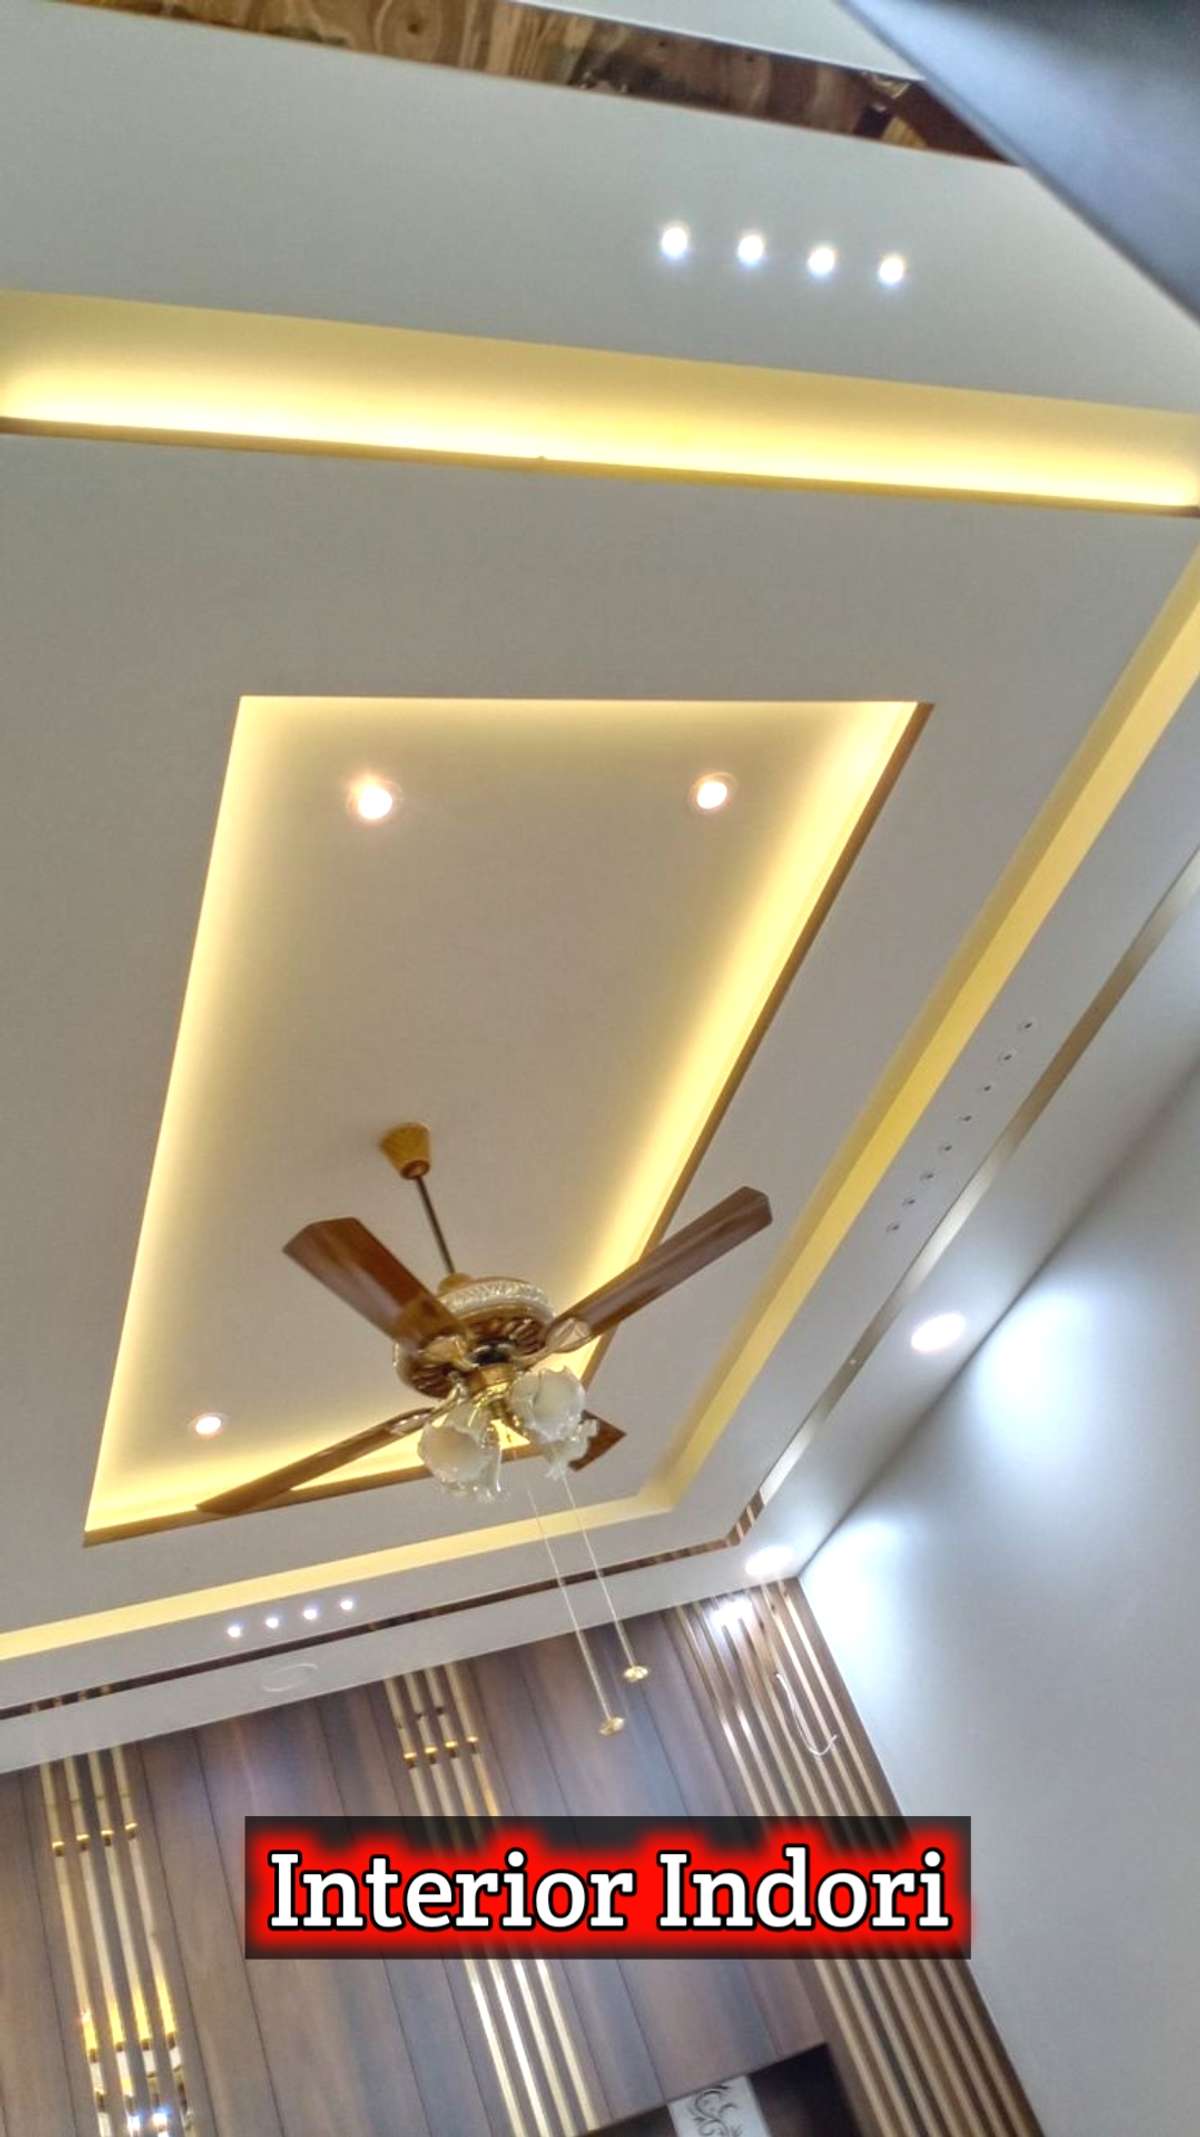 Latest False Ceiling Designs For Living Room 2022 / POP Design For Living Room / Bedroom Ceiling

https://youtu.be/6BMUINUECMM

#interiorindori #falseceiling #popdesign #falseceilingdesign #gypsumdesign #livingroomceiling #bedroomceiling #interiordesign #ceilingdesign #ceilingdesigns #PVCFalseCeiling  #ceilingcolour